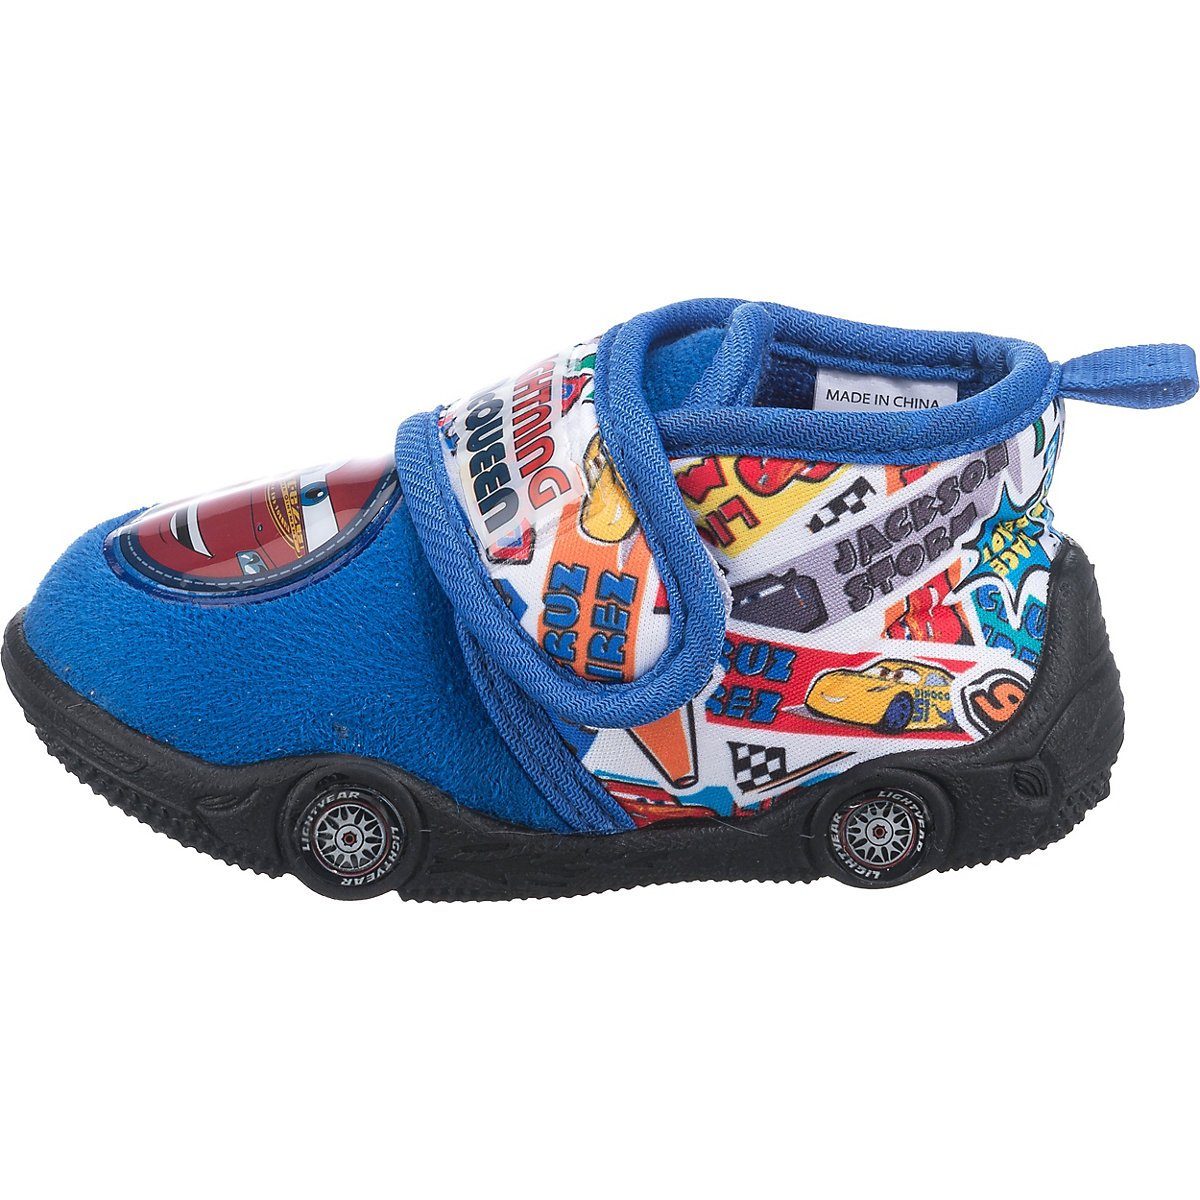 Schuhe Babyschuhe Jungen Disney Cars Disney Cars Baby Hausschuhe für Jungen Hausschuh